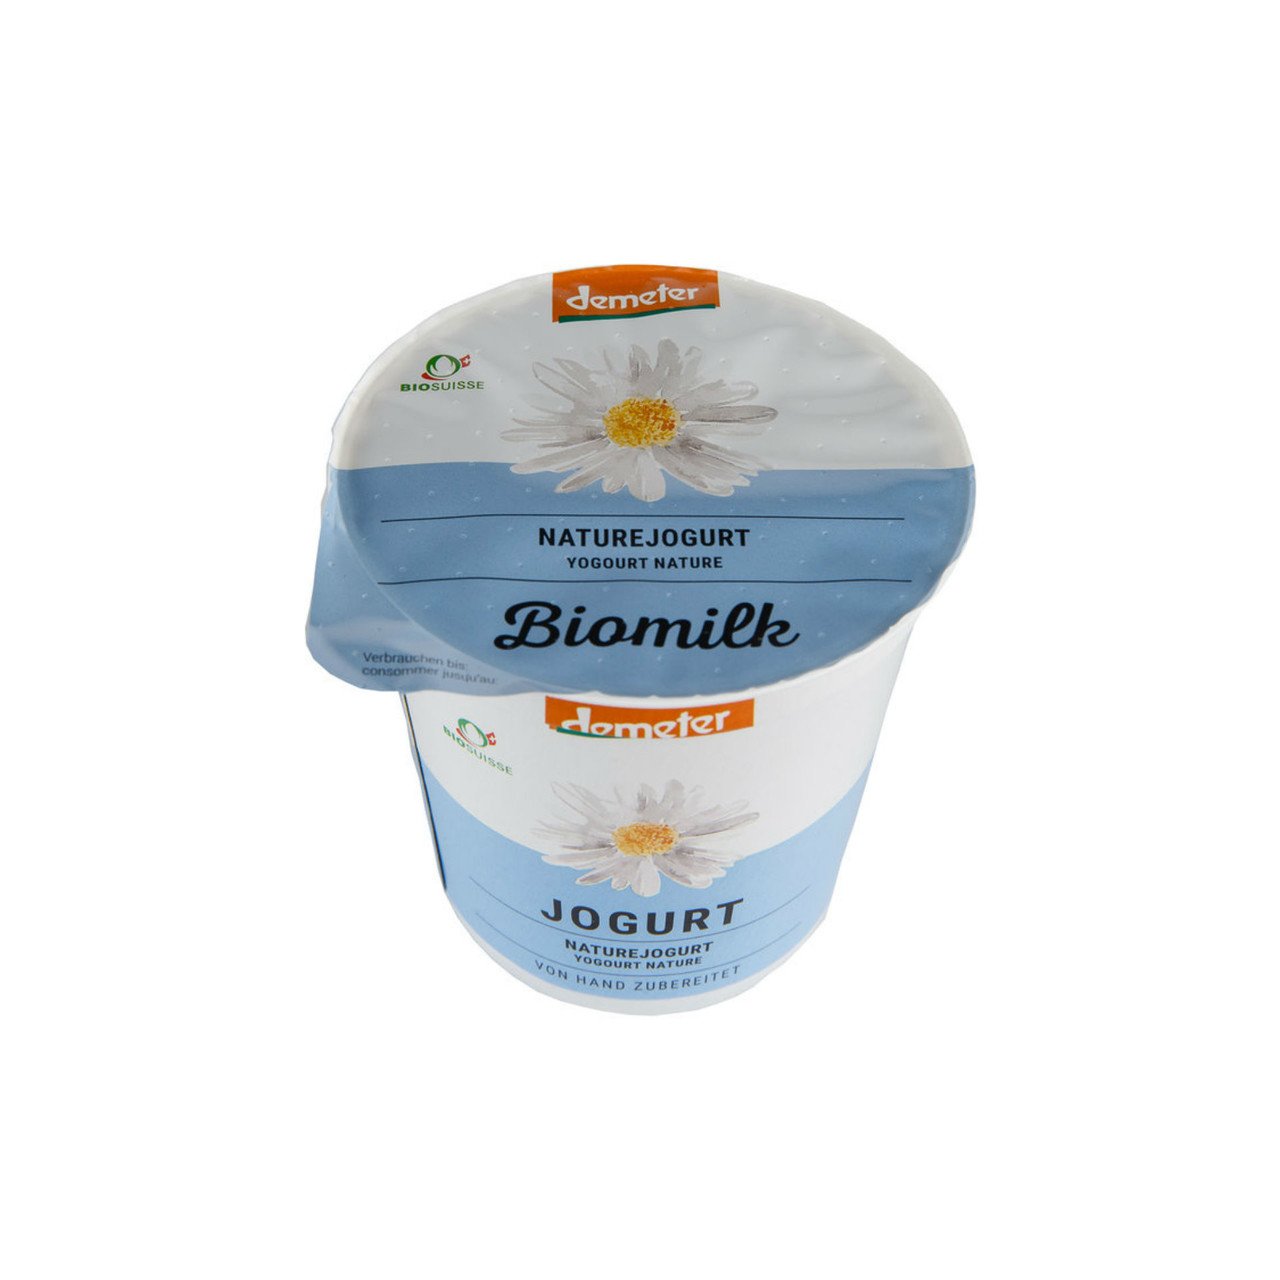 Biomilk Joghurt Nature stichfest 150g Demeter